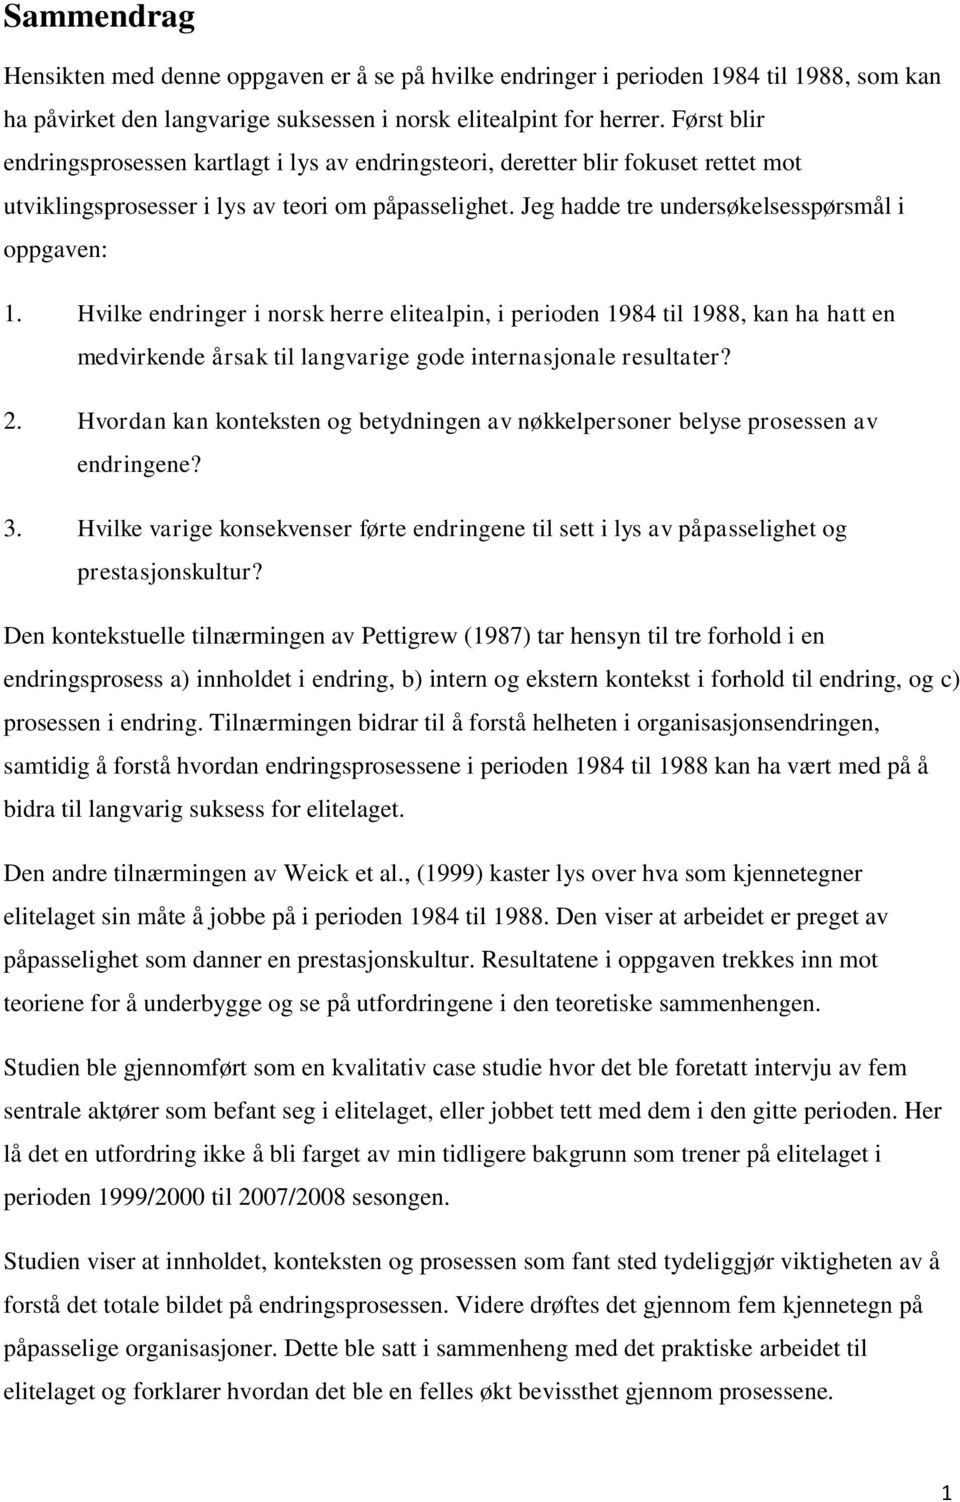 Hvilke endringer i norsk herre elitealpin, i perioden 1984 til 1988, kan ha hatt en medvirkende årsak til langvarige gode internasjonale resultater? 2.